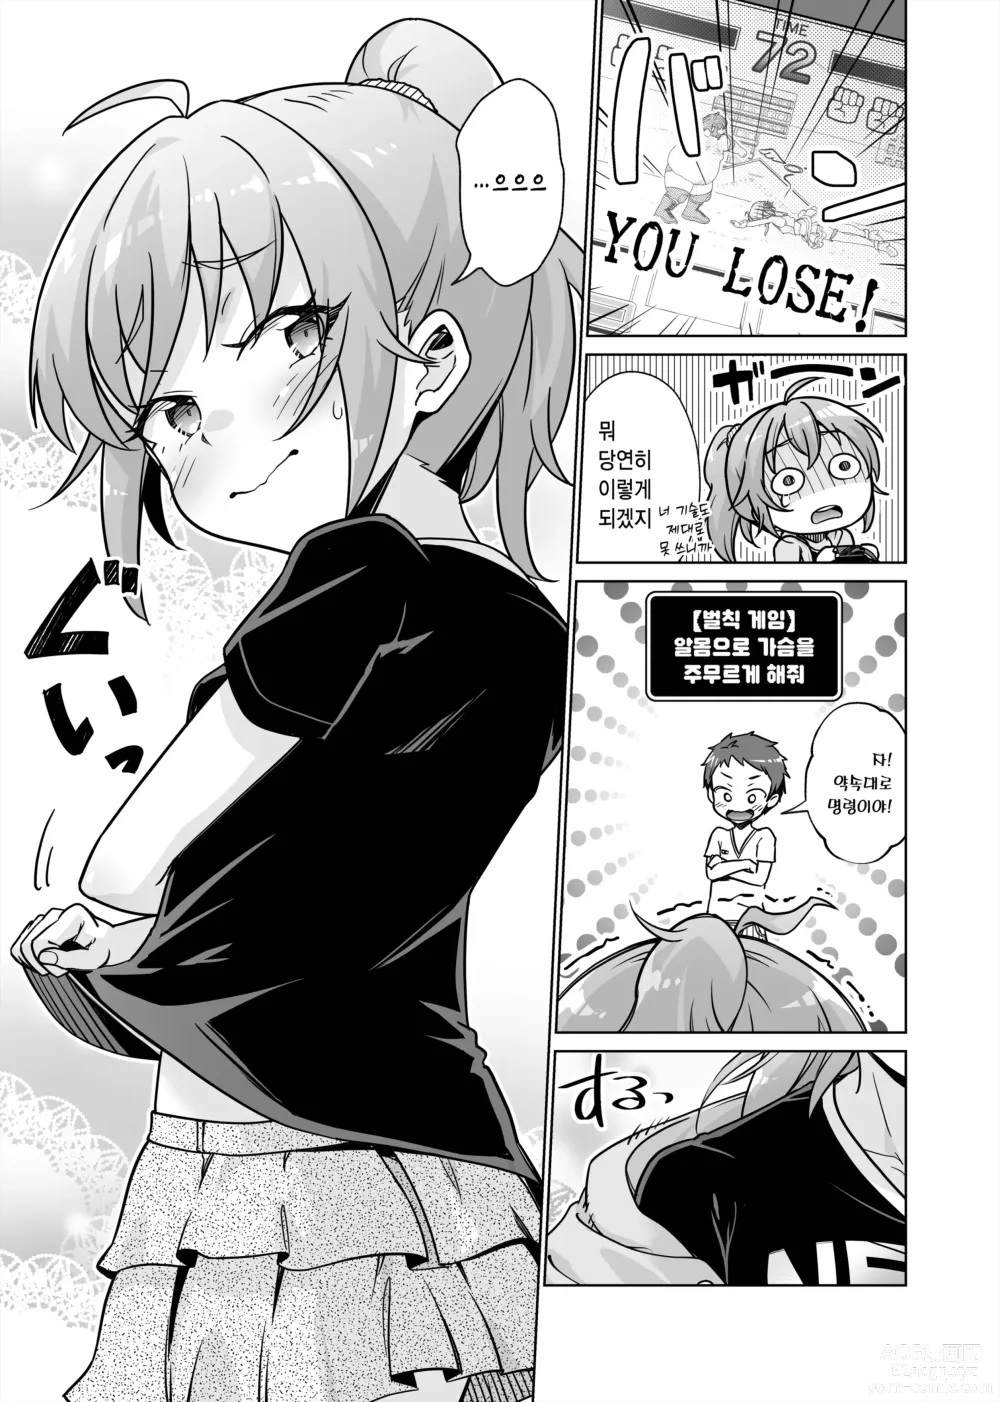 Page 7 of doujinshi 벌칙 게임으로 여자에게 야한 명령을 내렸습니다